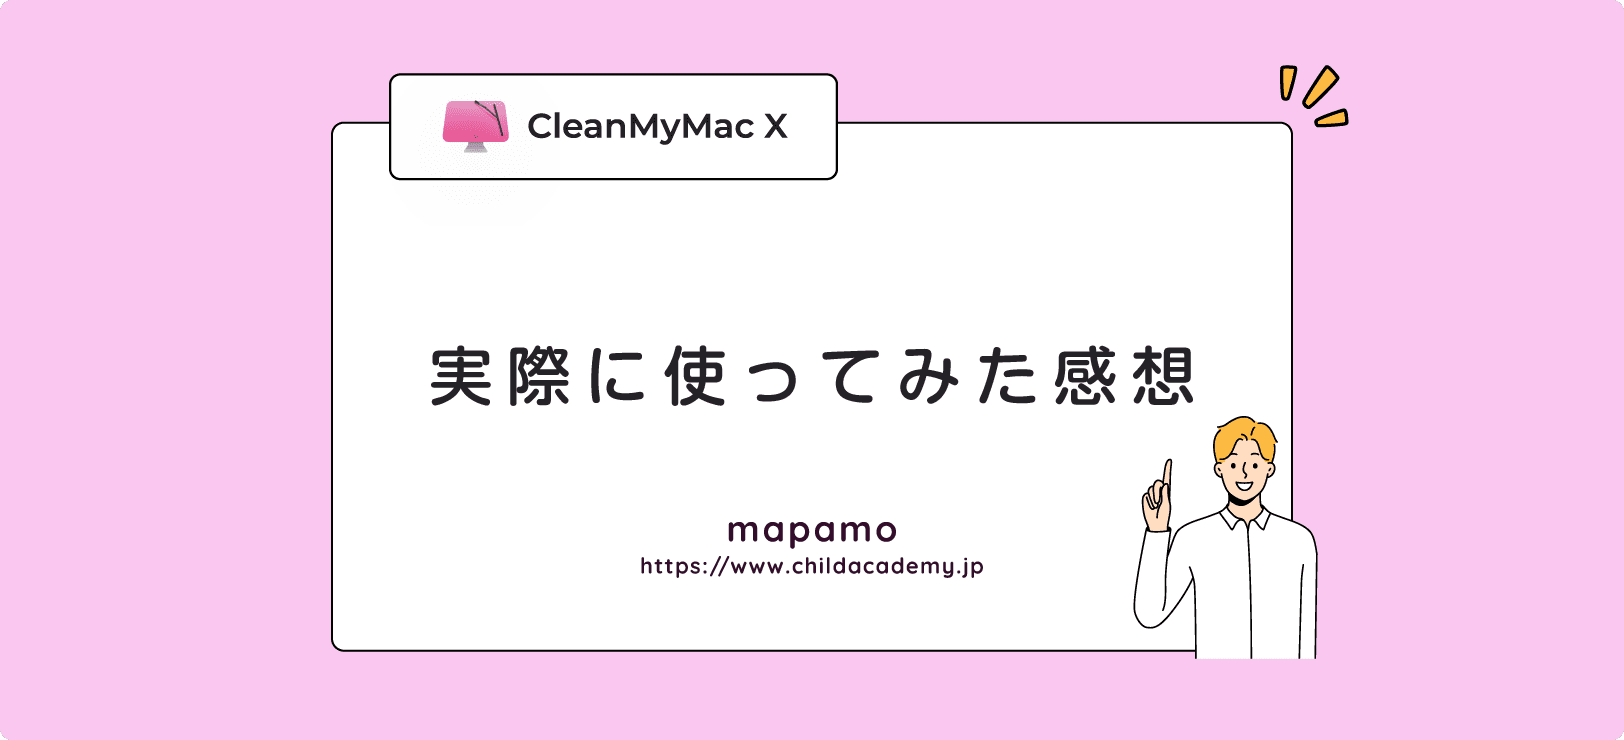 【体験談】CleanMyMac Xを実際に使ってみた感想